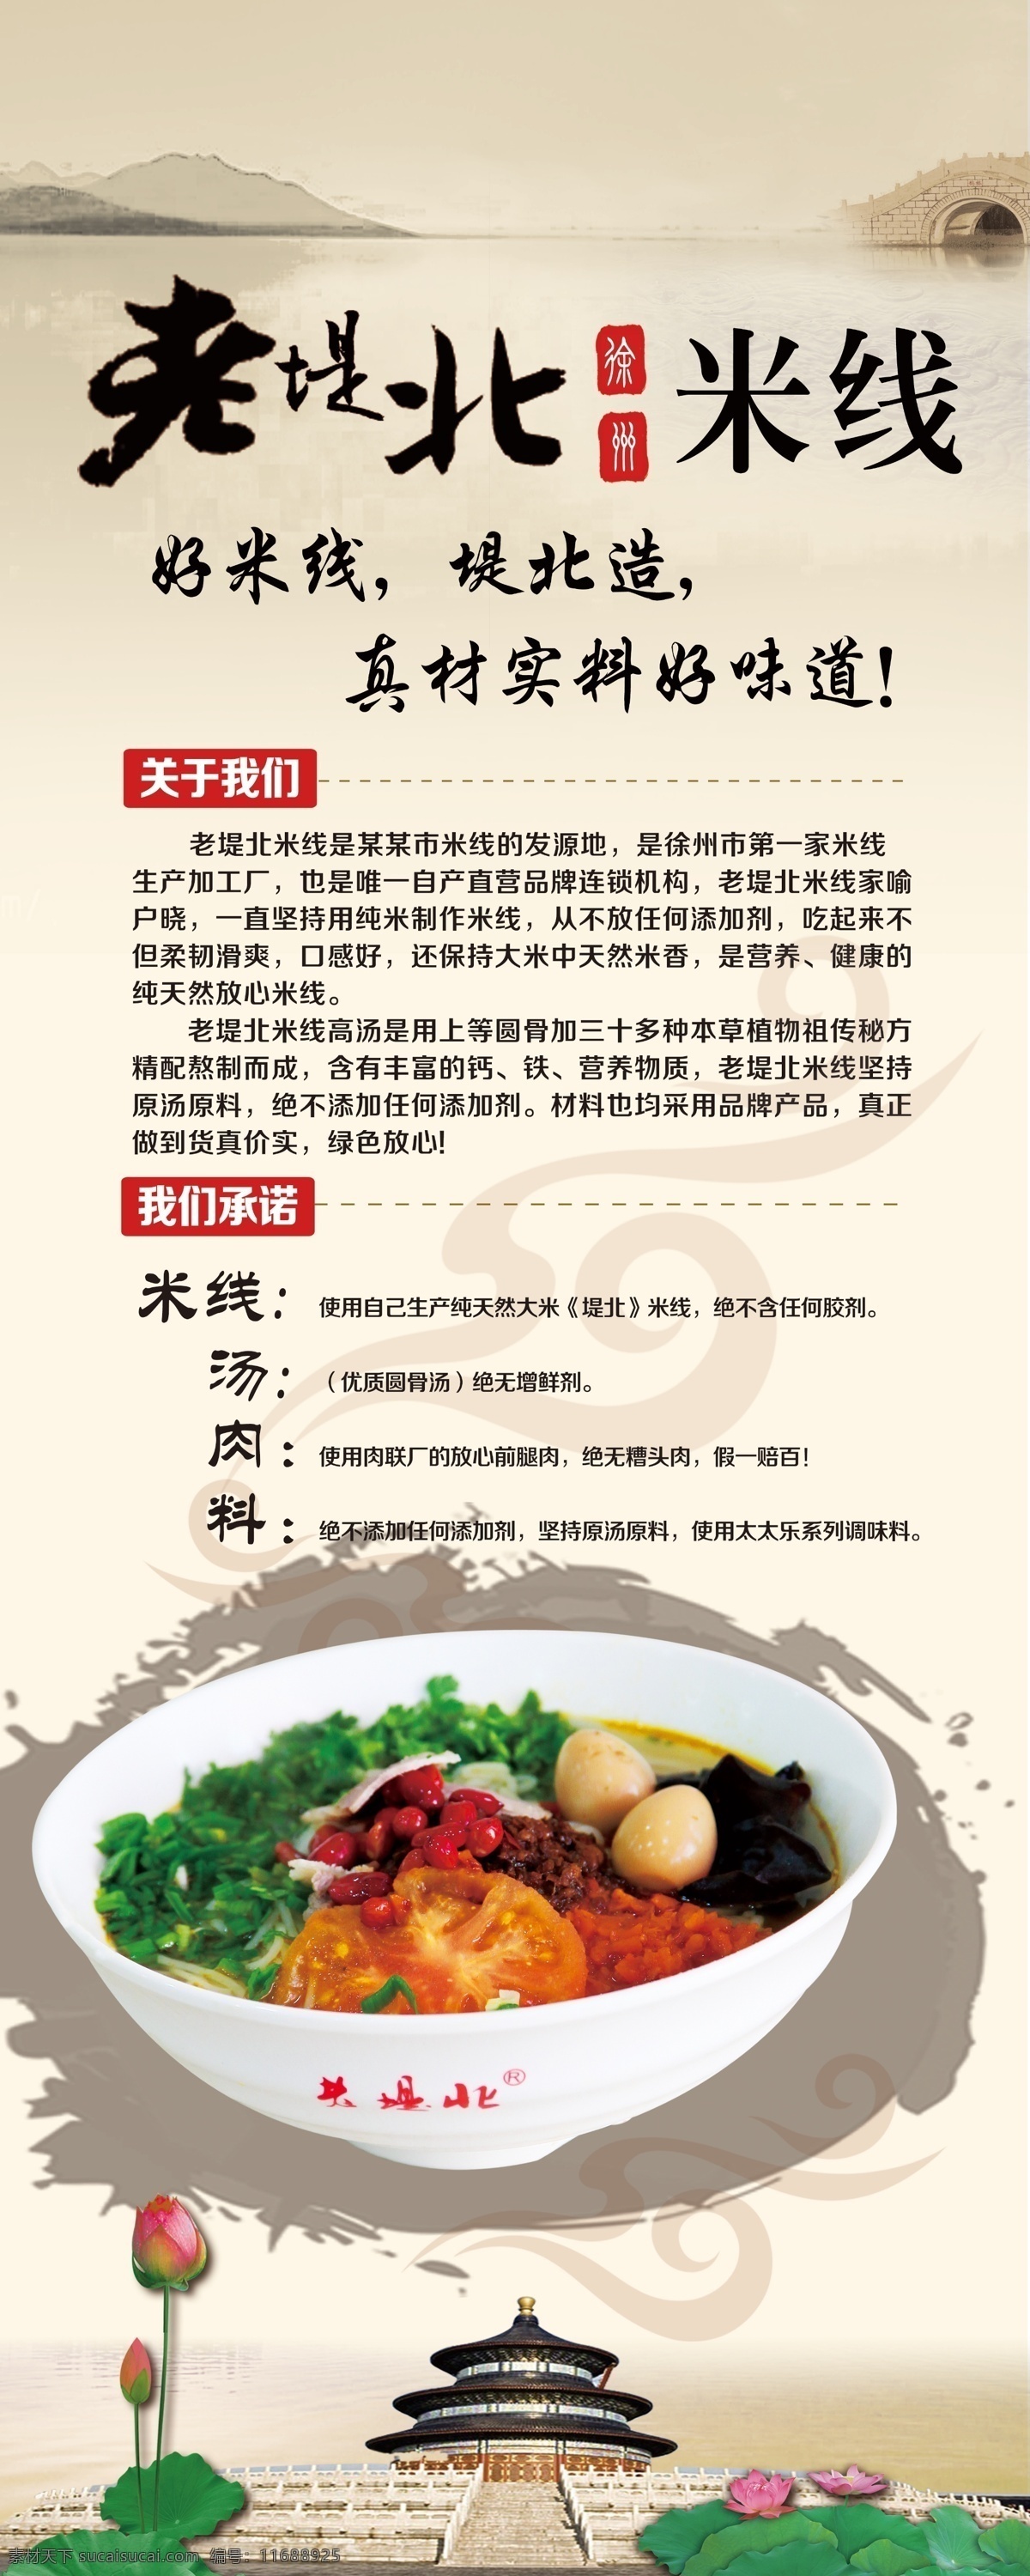 中国风易拉宝 中国风 海报 米线 食品 饮食 餐饮海报 展板 餐饮展板 企业展板 企业海报 x展架 易拉宝 企业易拉宝 展板模板 白色